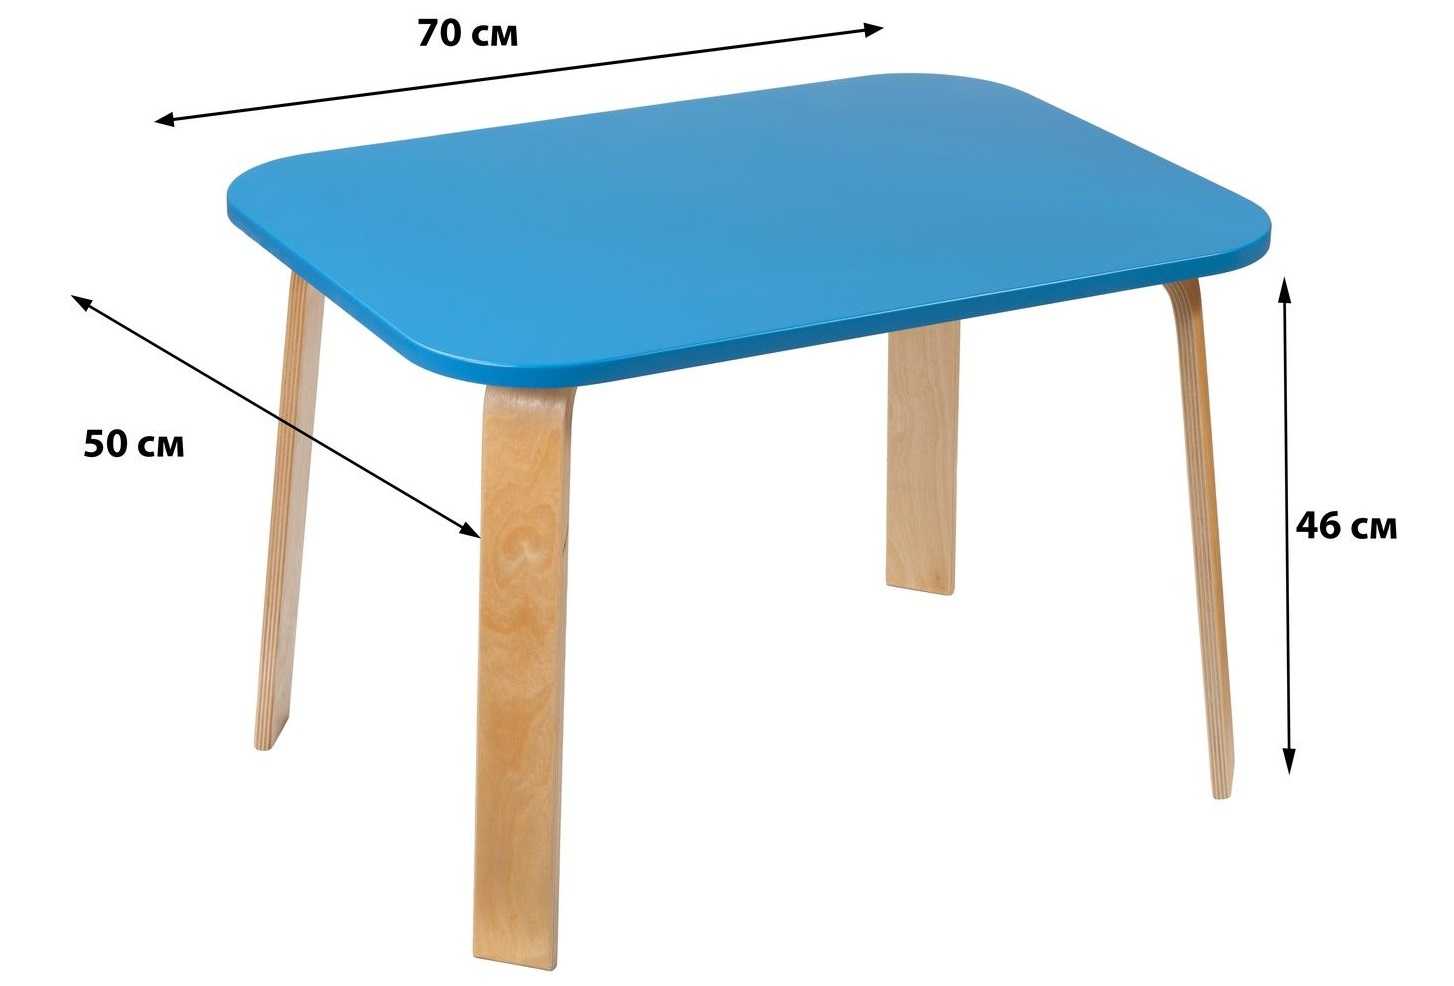 Как правильно подобрать высоту стола для взрослых и детей 29 - ДиванеТТо